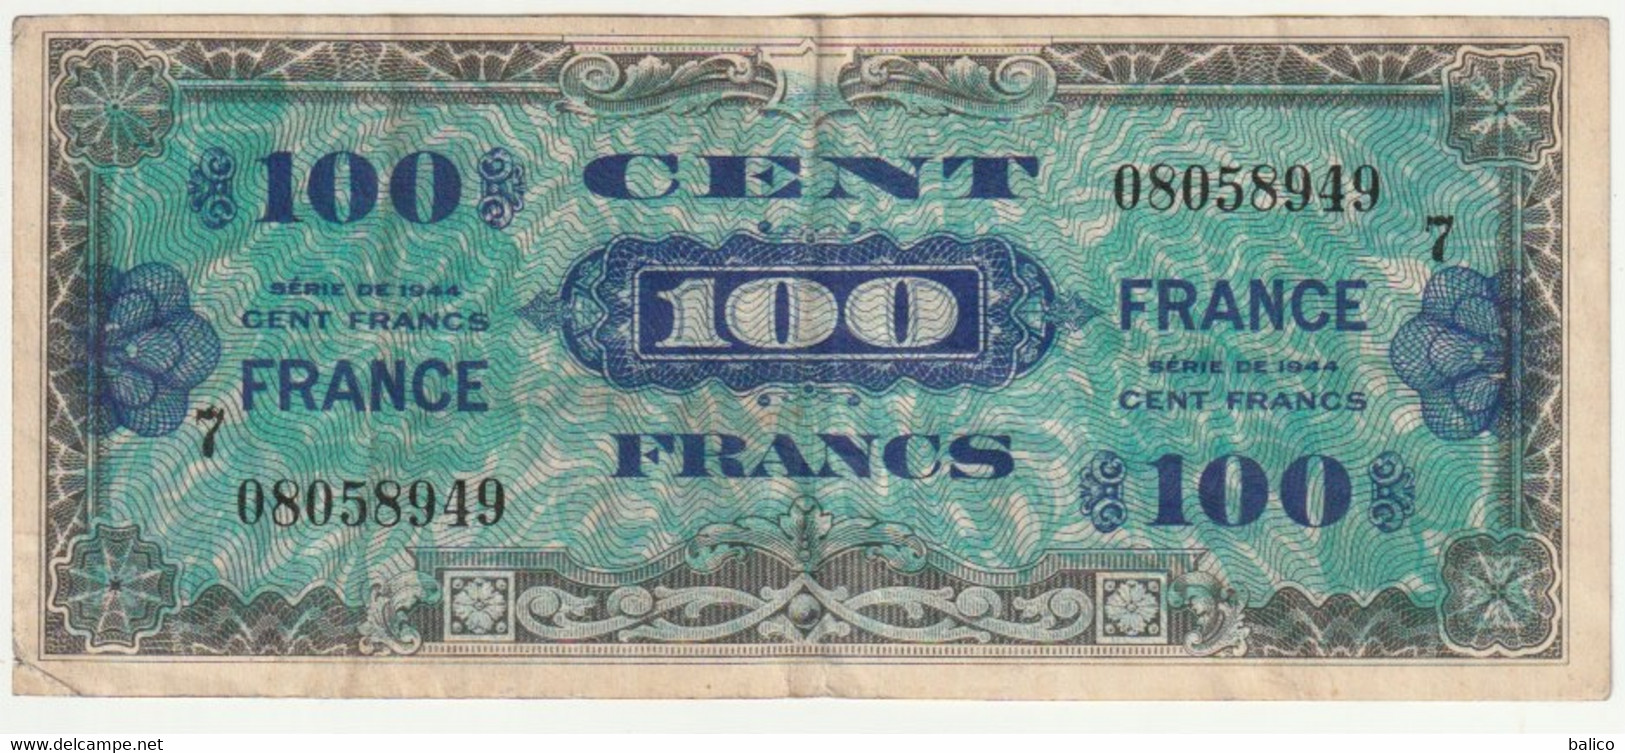 France, 100 Francs   1944   N° 08058949 - 1944 Vlag/Frankrijk